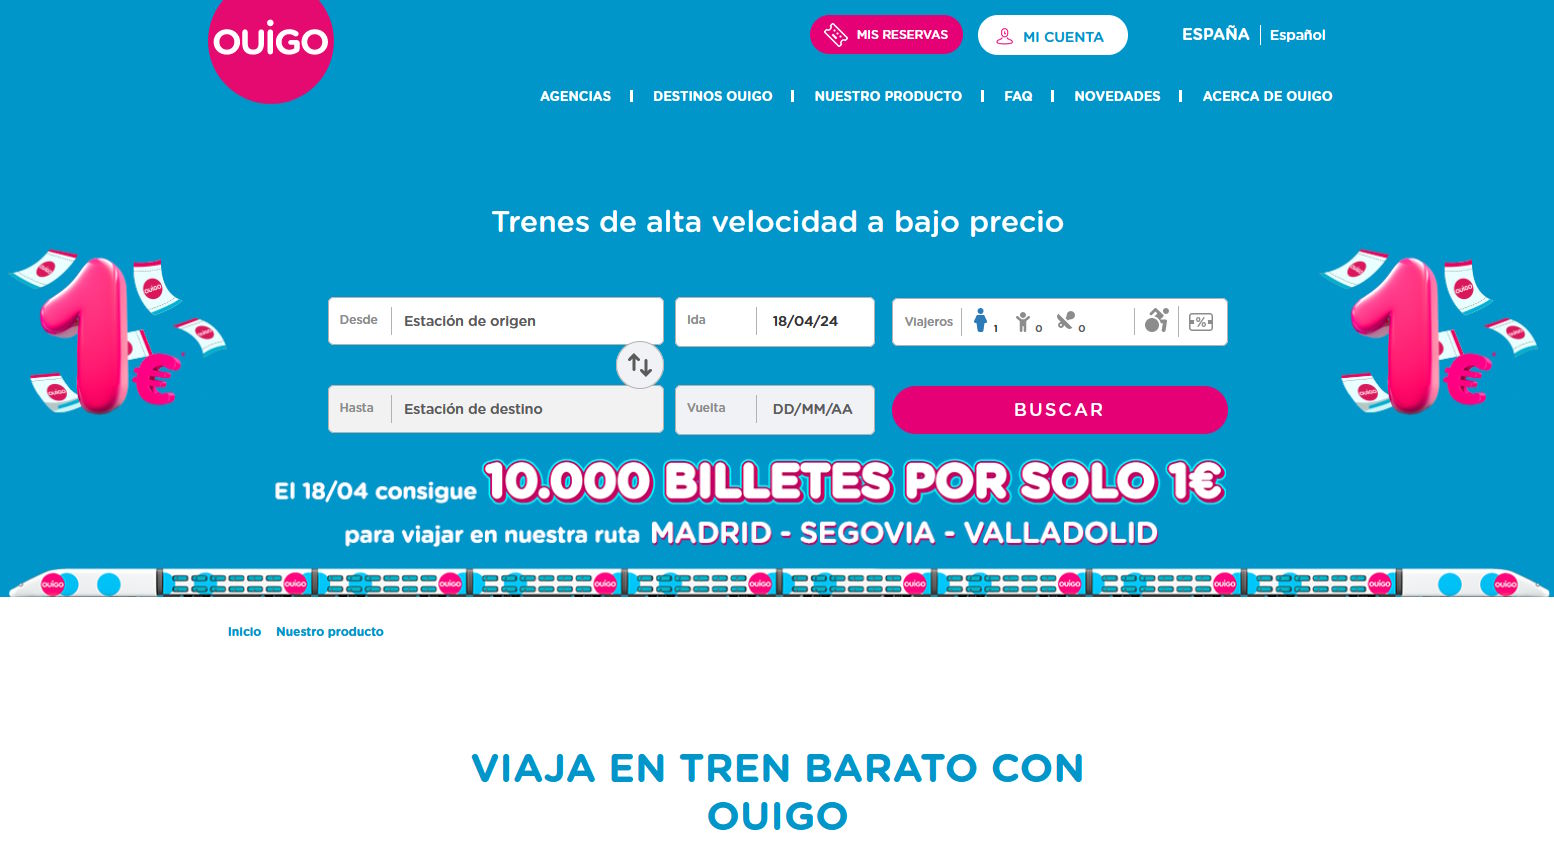 Captura de pantalla de la web de Ouigo donde anuncian su promoción de billetes a un euro a Segovia y Valladolid